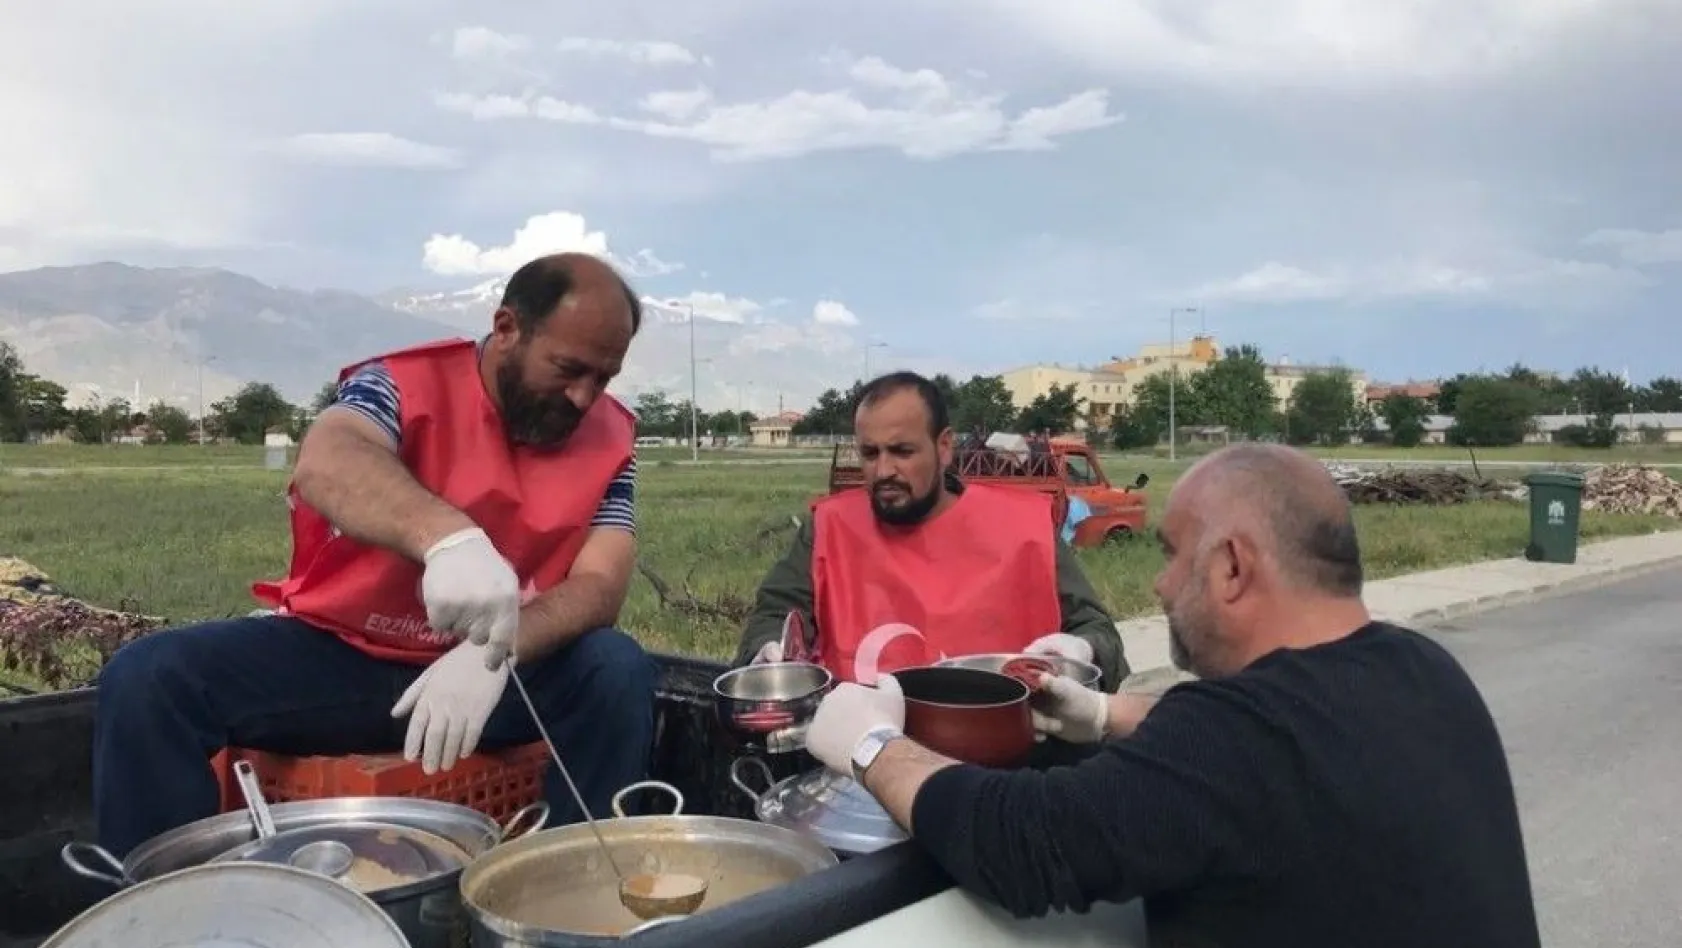 Erzincan Belediyesi ihtiyaçlı ailelerin evlerine iftar sofrası açıyor
